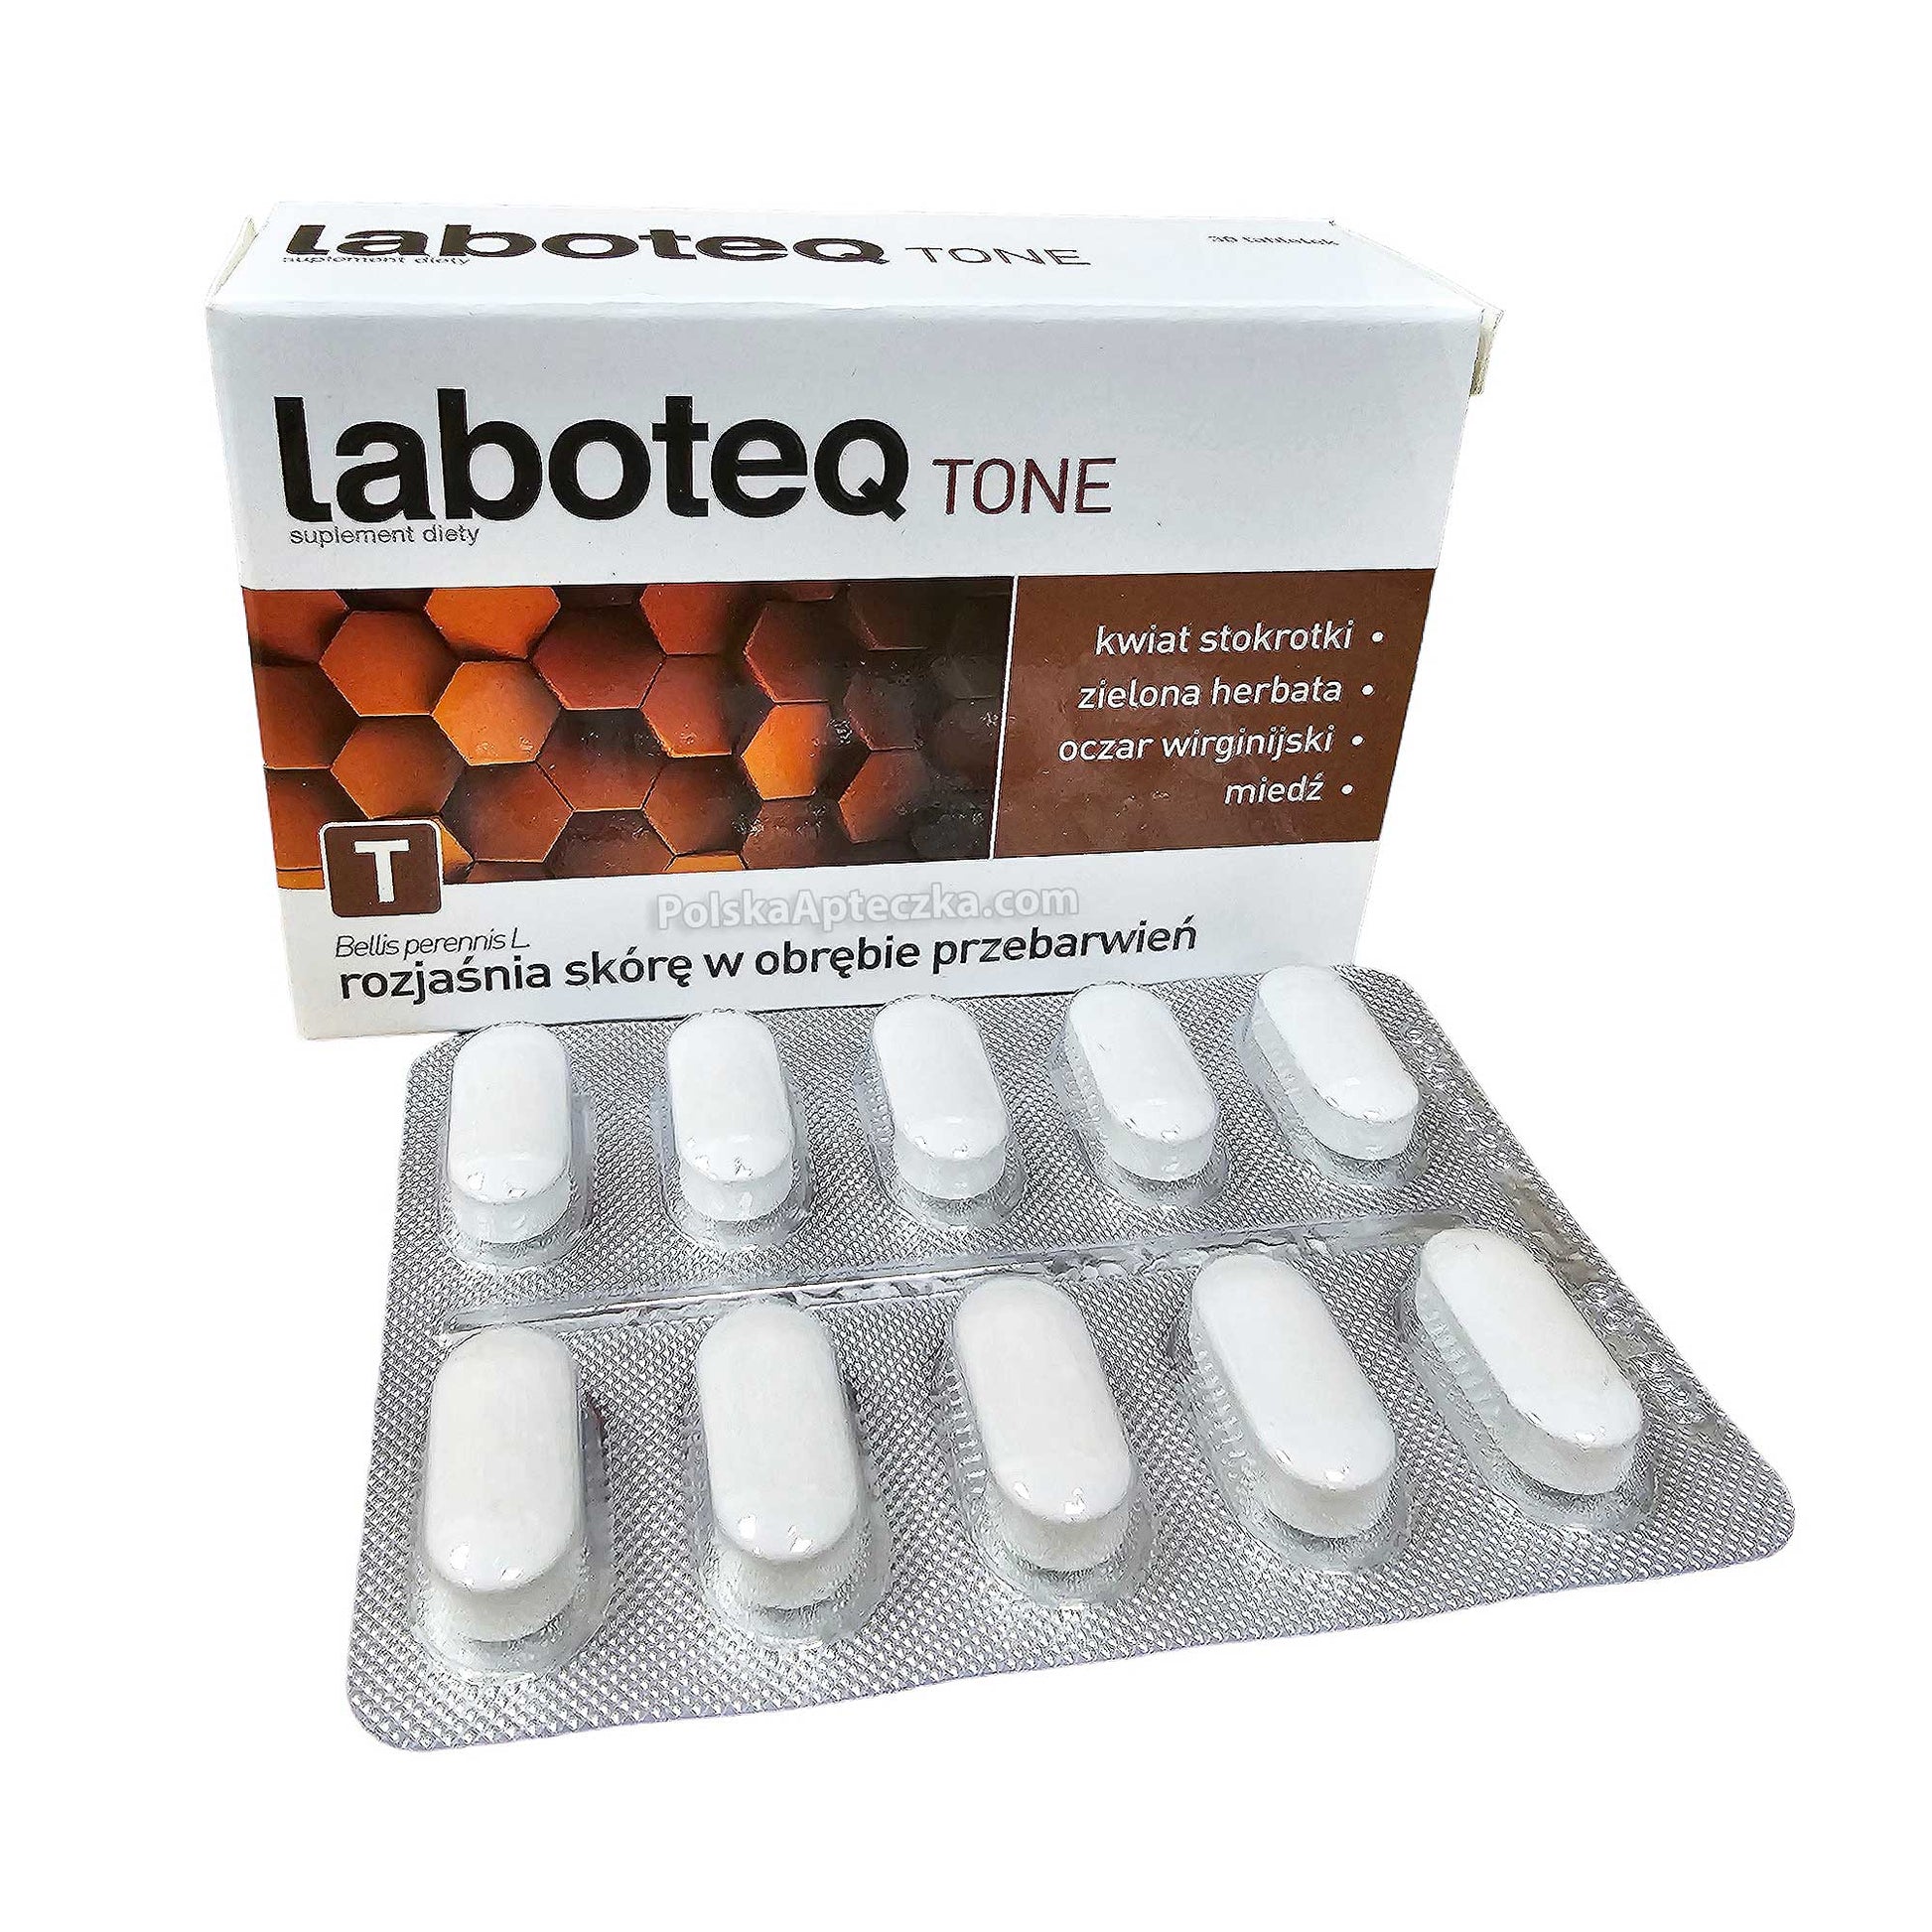 laboteq tone tabletki